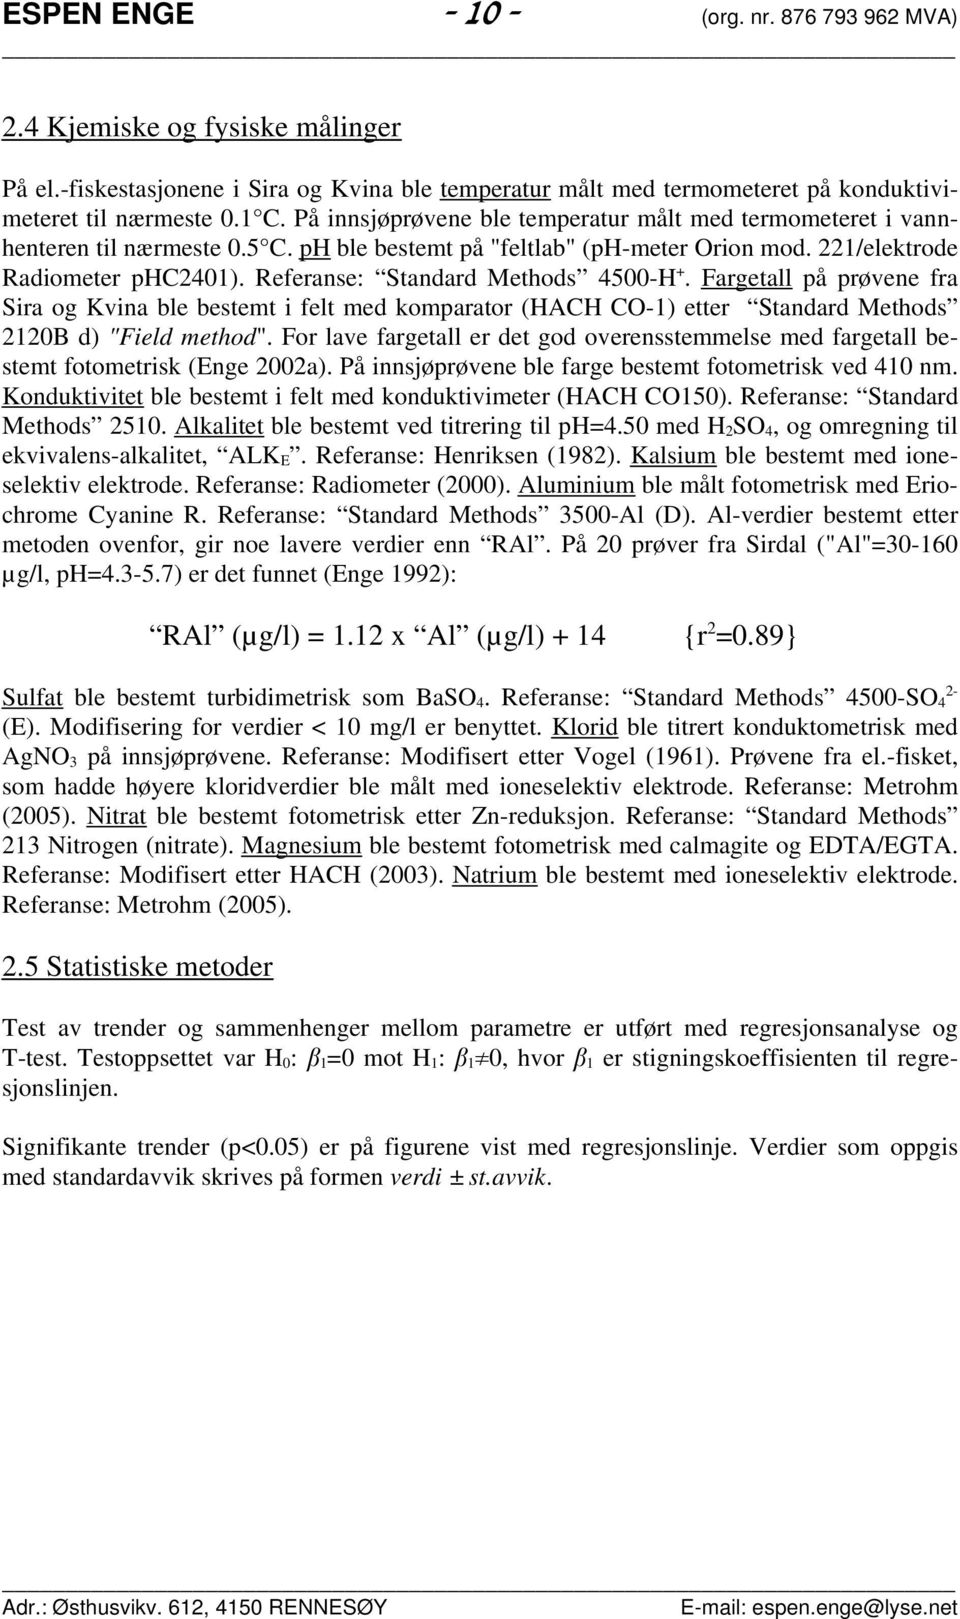 Referanse: Standard Methods 45-H +. Fargetall på prøvene fra Sira og Kvina ble bestemt i felt med komparator (HACH CO-1) etter Standard Methods 212B d) "Field method".